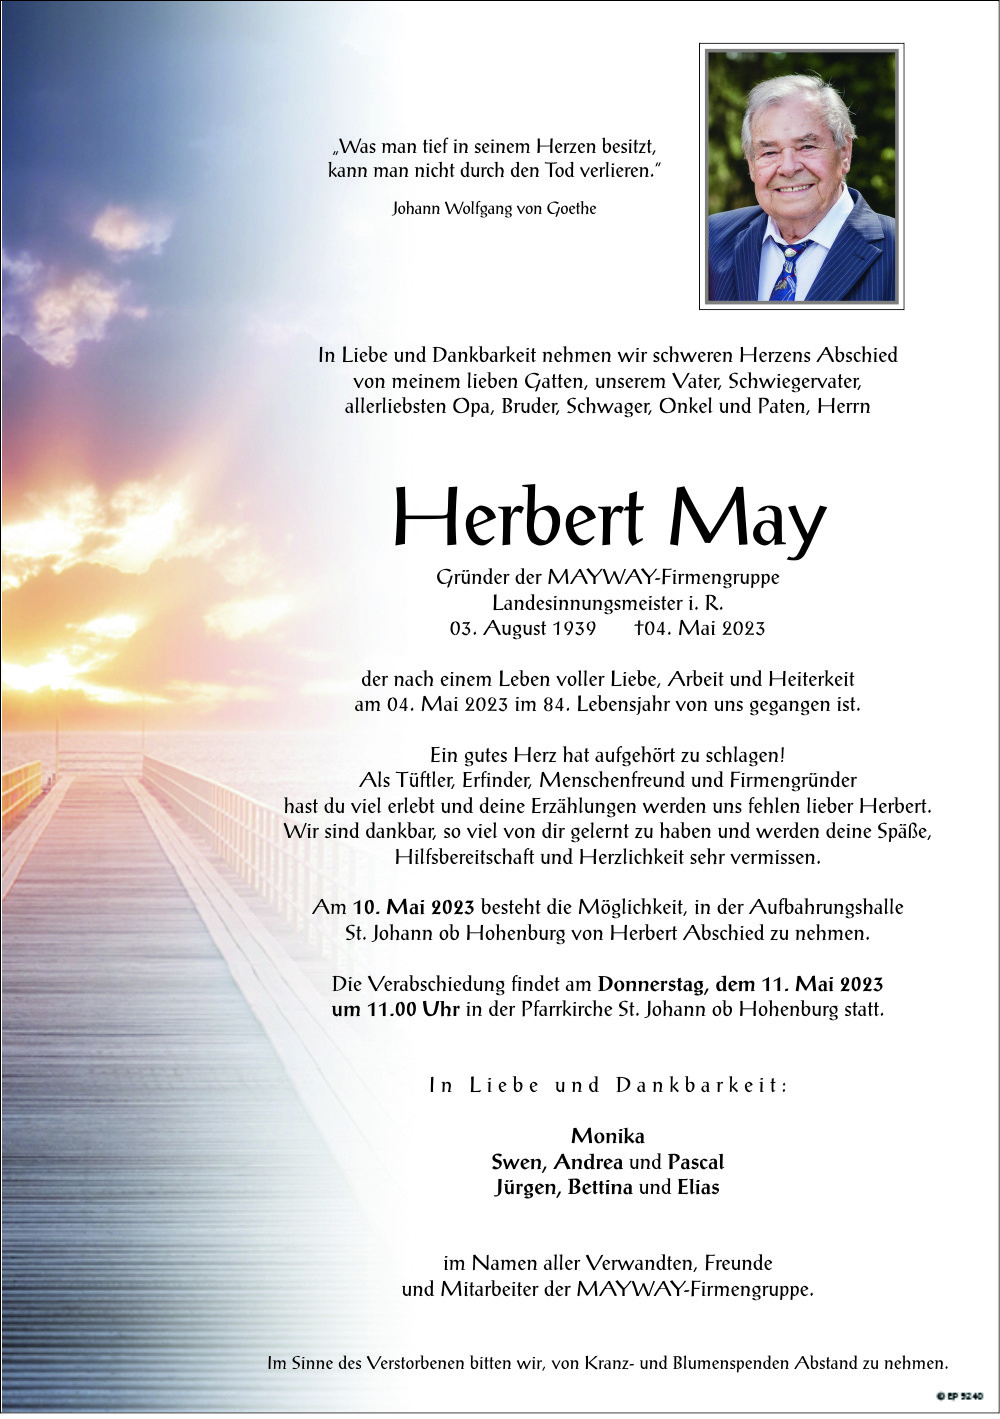 Herbert May